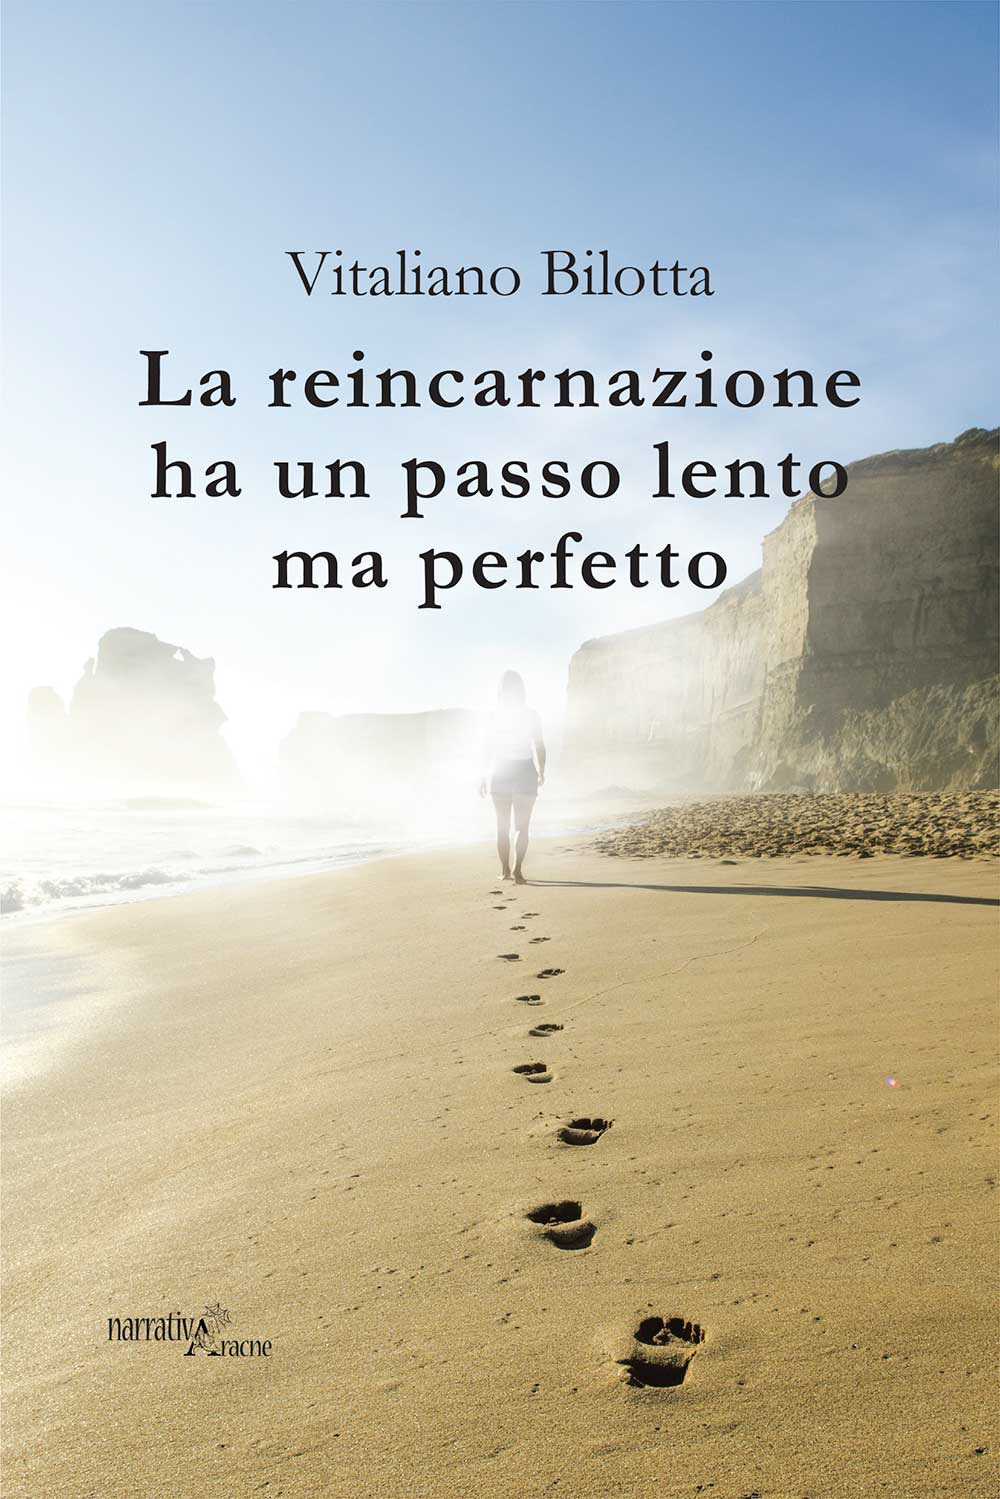 Libri Vitaliano Bilotta - La Reincarnazione Ha Un Passo Lento Ma Perfetto NUOVO SIGILLATO, EDIZIONE DEL 12/06/2020 SUBITO DISPONIBILE